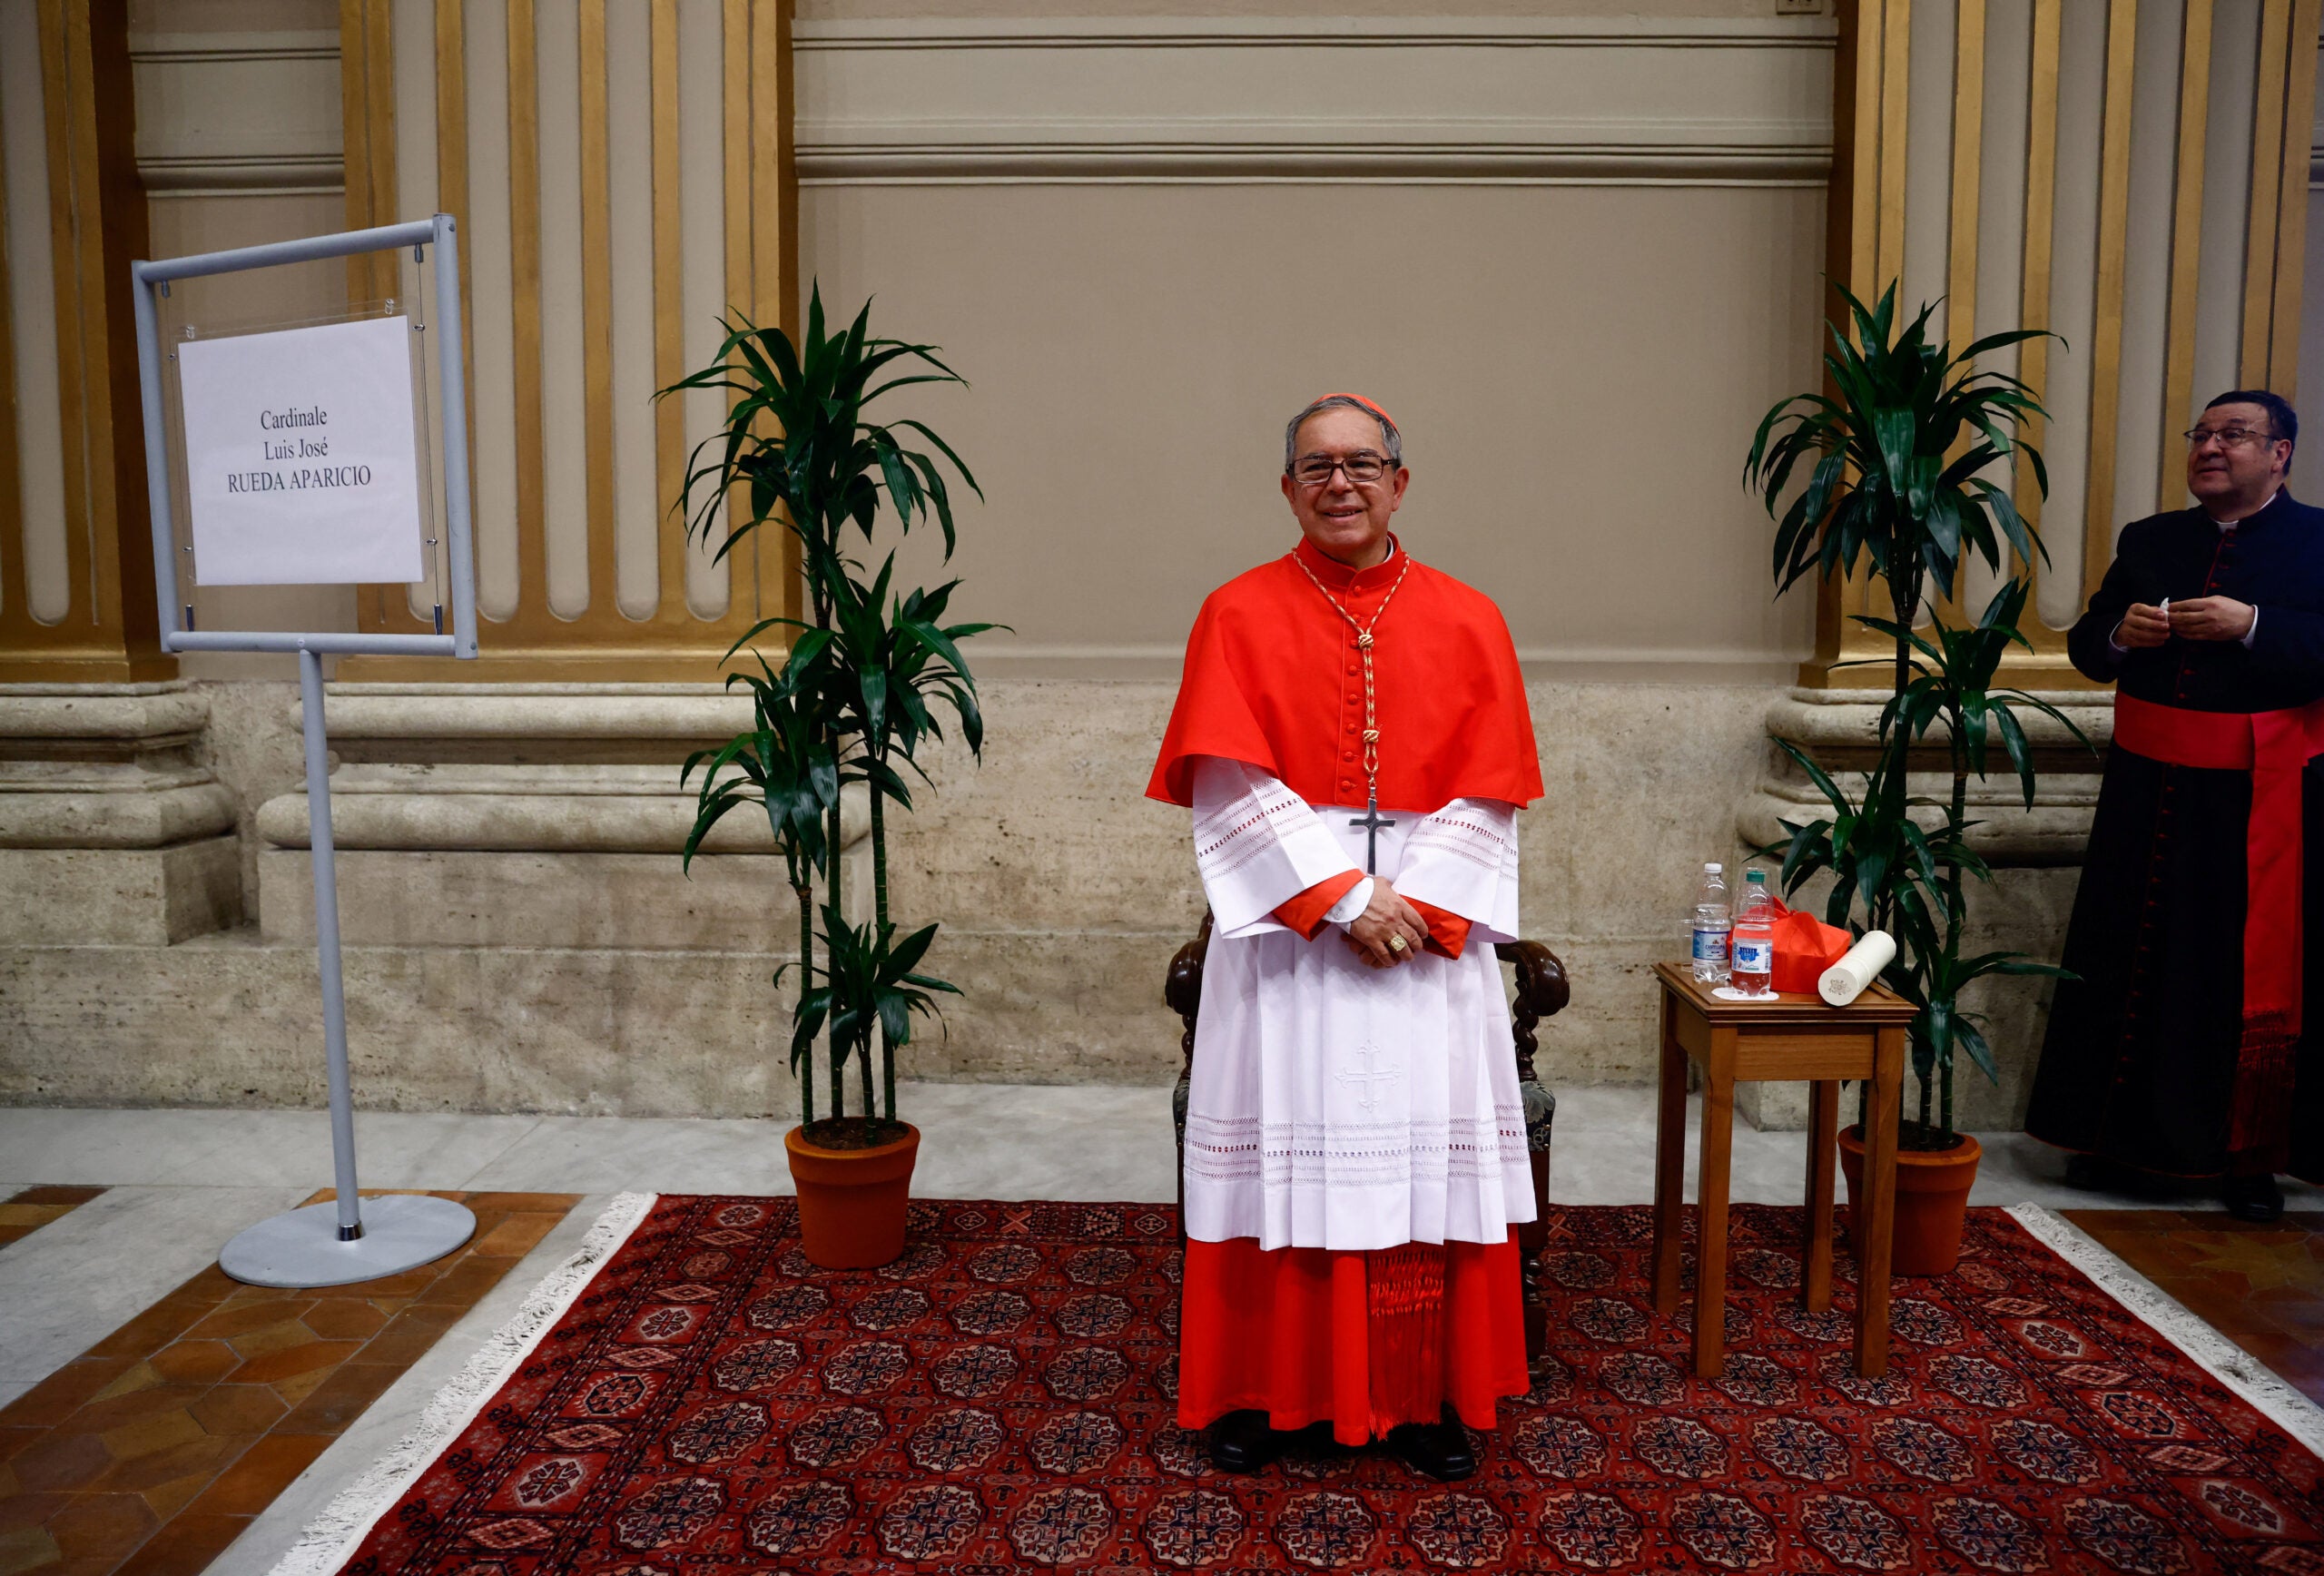 Los nuevos cardenales se reúnen con sus familiares tras la ceremonia del consistorio en el Vaticano